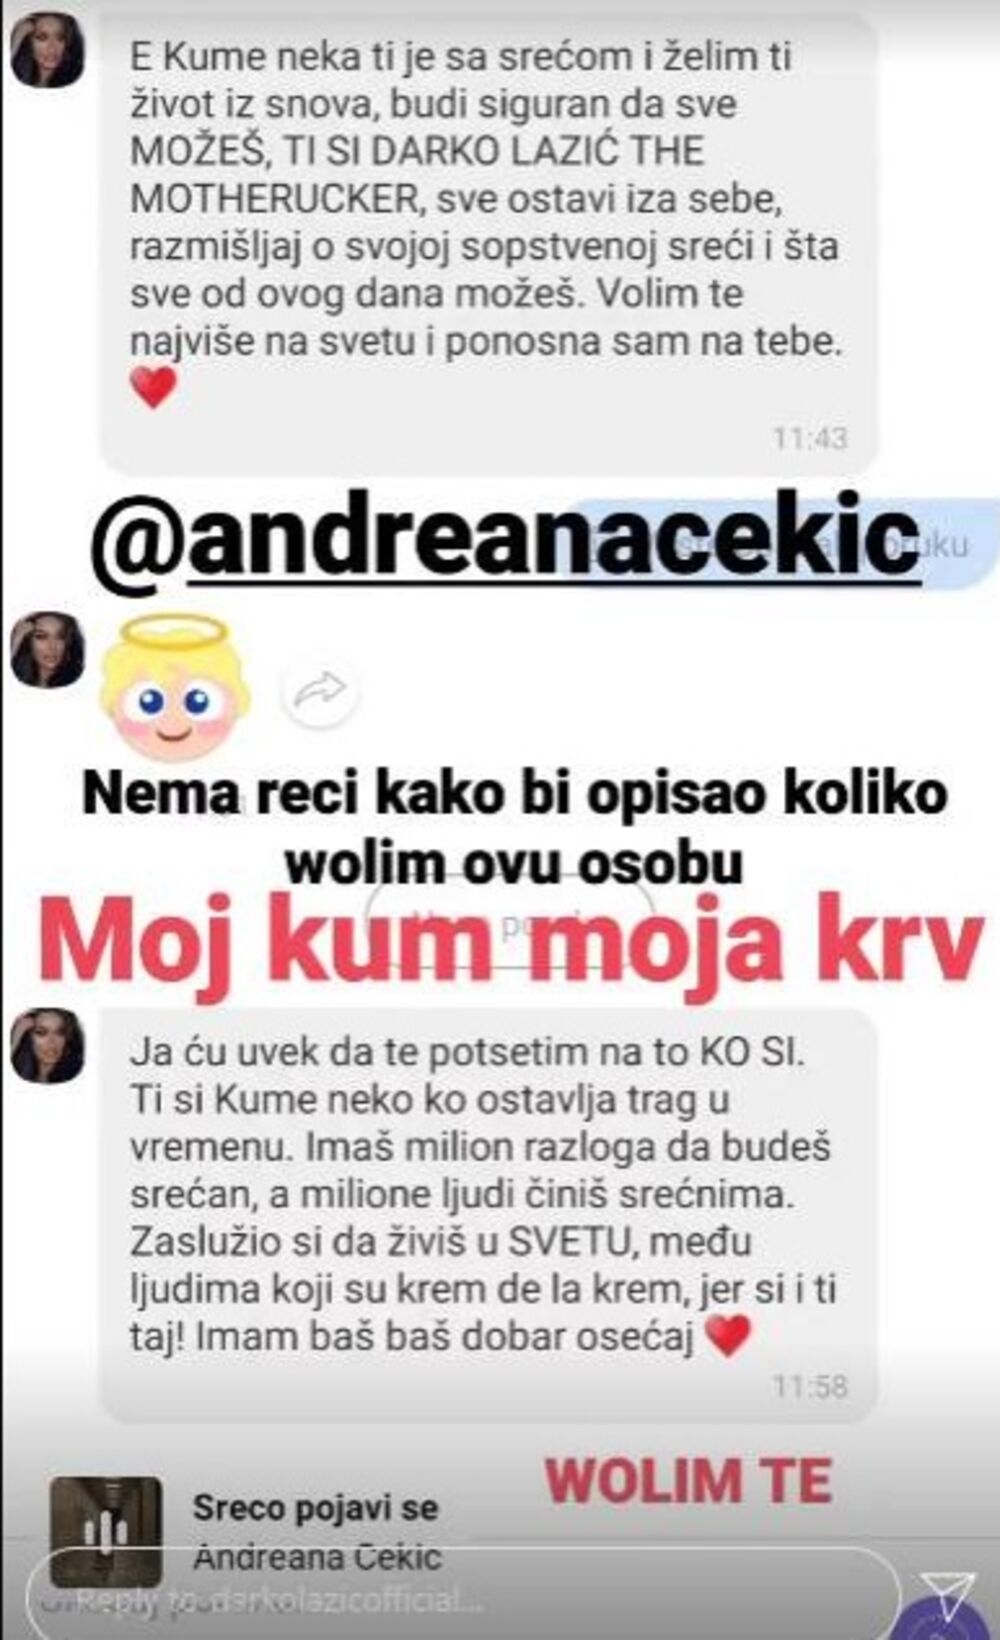 Andreana Čekić, Darko Lazić